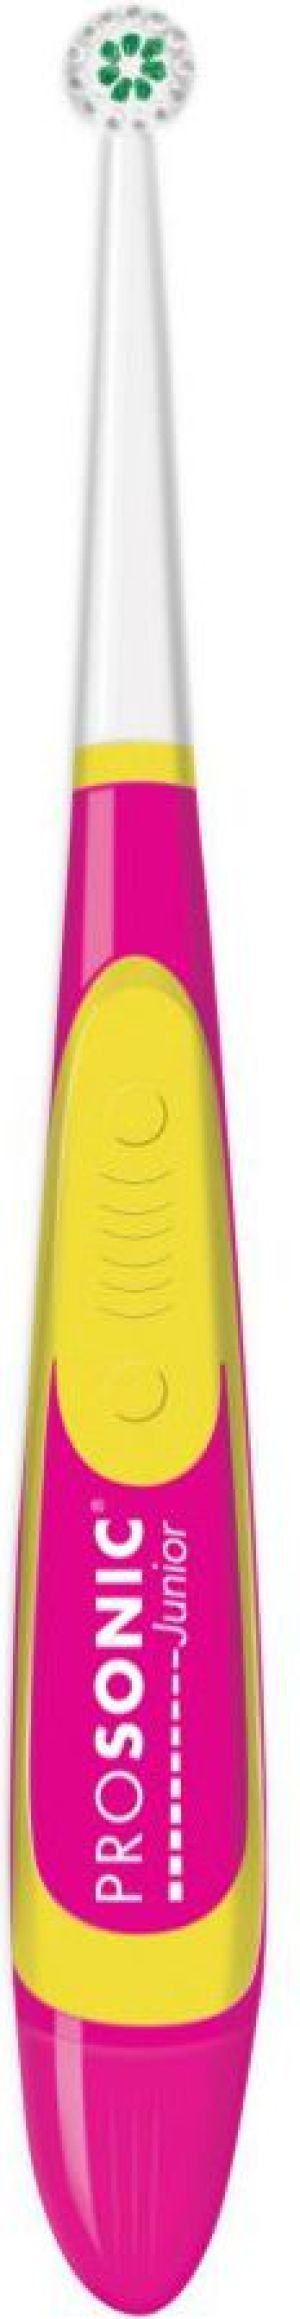 Szczoteczka Visiomed Prosonic Micro Junior Różowo-żółta 1